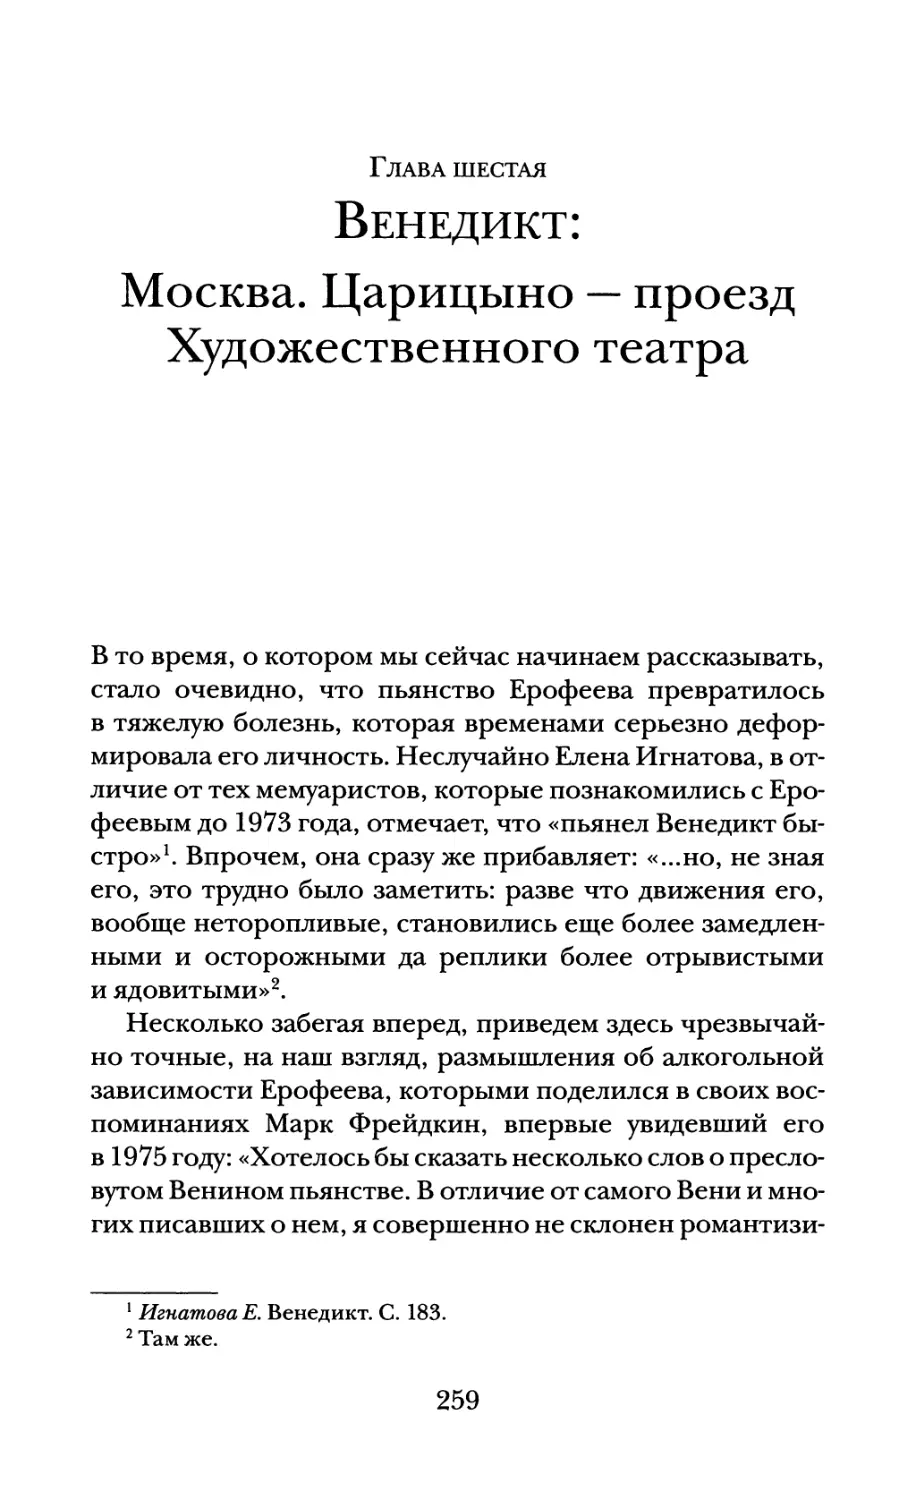 Глава шестая. Венедикт: Москва. Царицыно — проезд Художественного театра